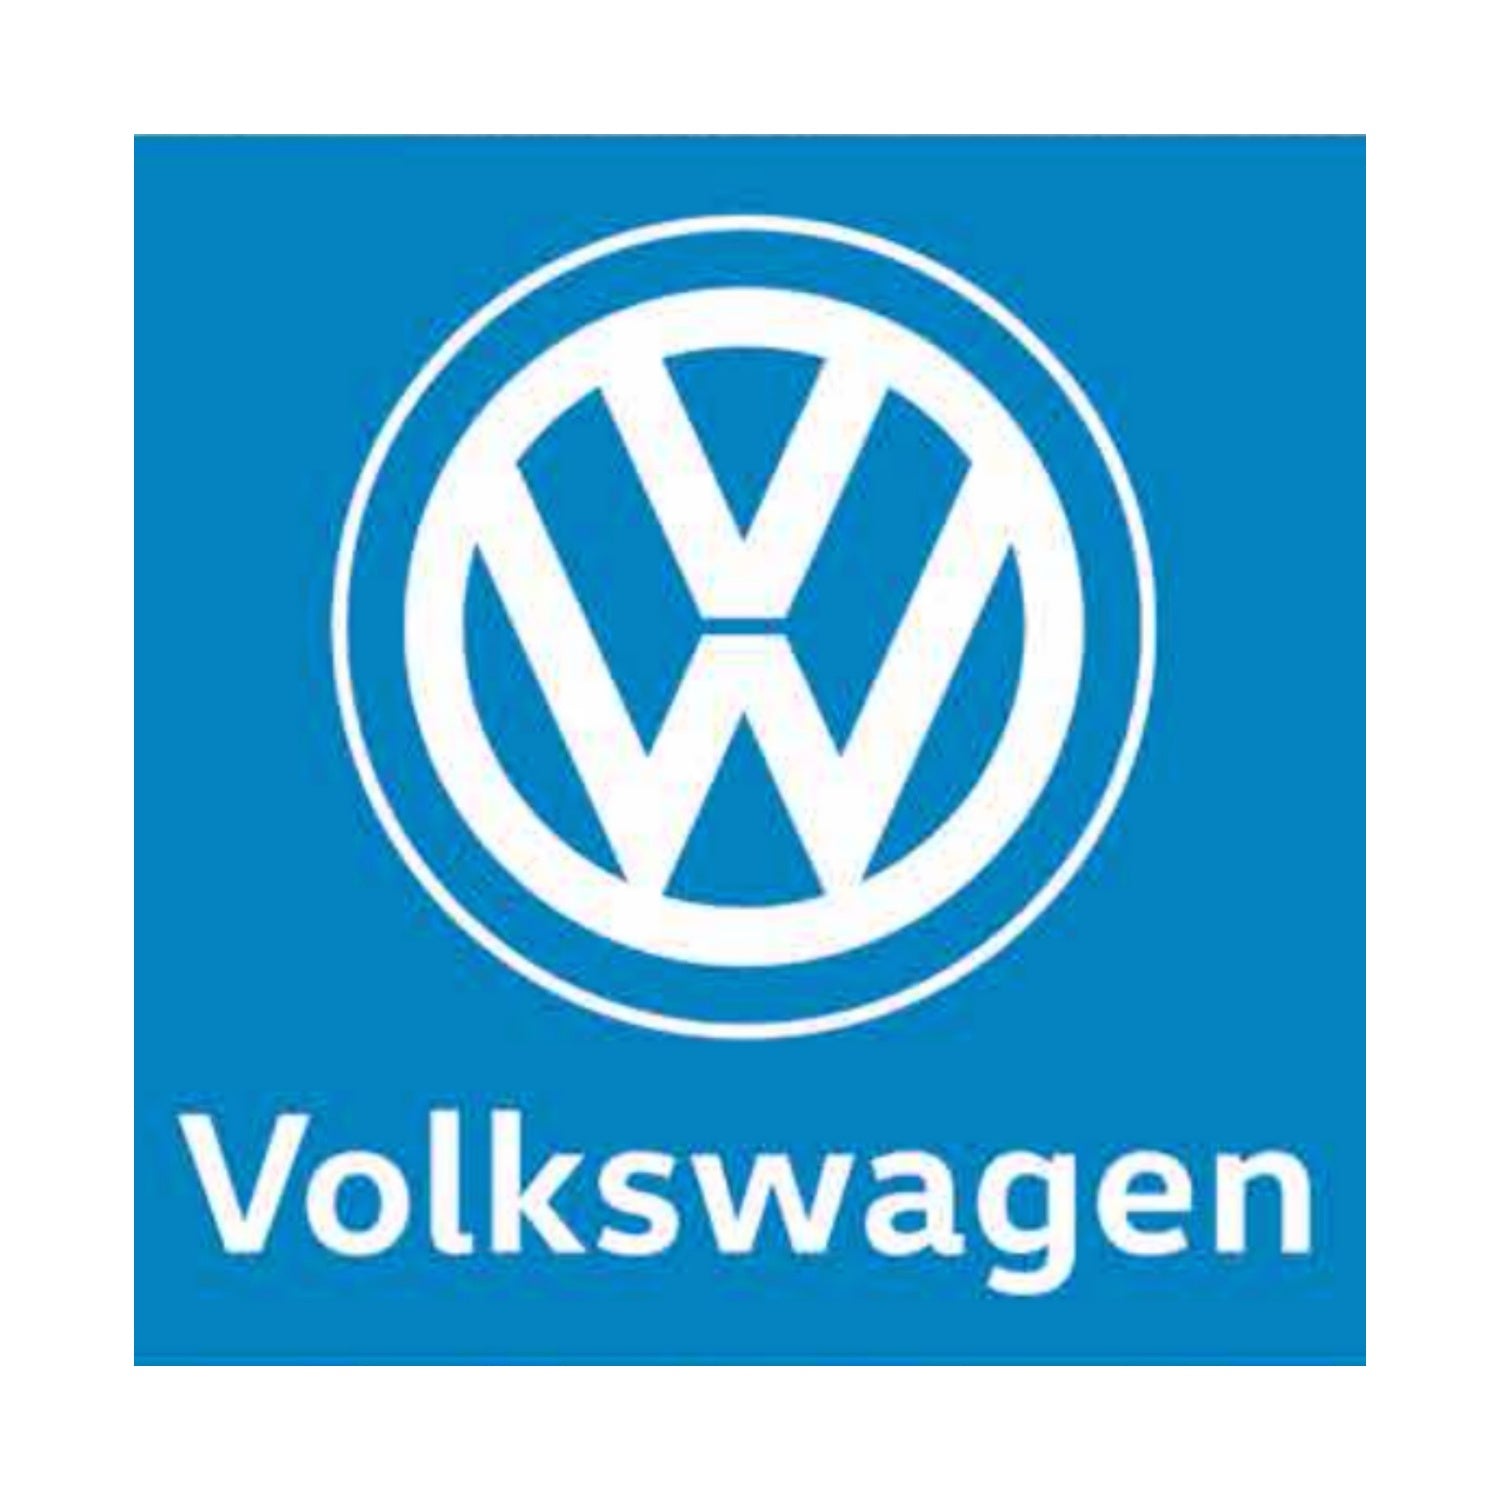 Volkswagen Fanartikel – SkyBrands24